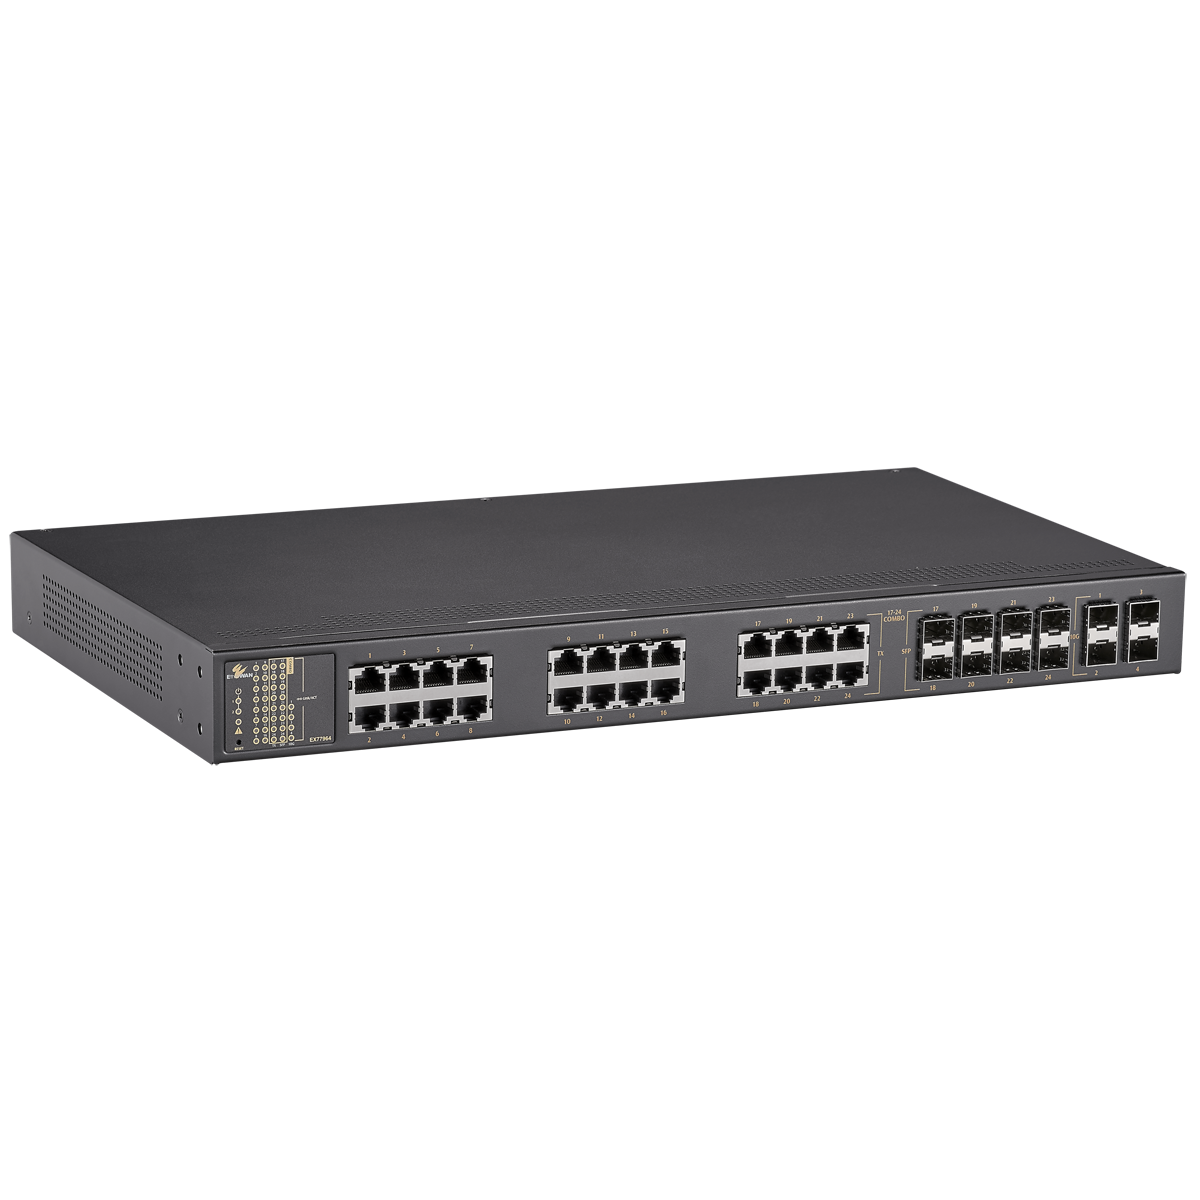 EX77964-8VB - Hardened Managed 24-port Gigabit Ethernet Switch [16-port 10/100/1000BASE-TX + 8-port 100/1000BASE SFP Combo + 4-port 1G/10G SFP+ (12-24VDC)]